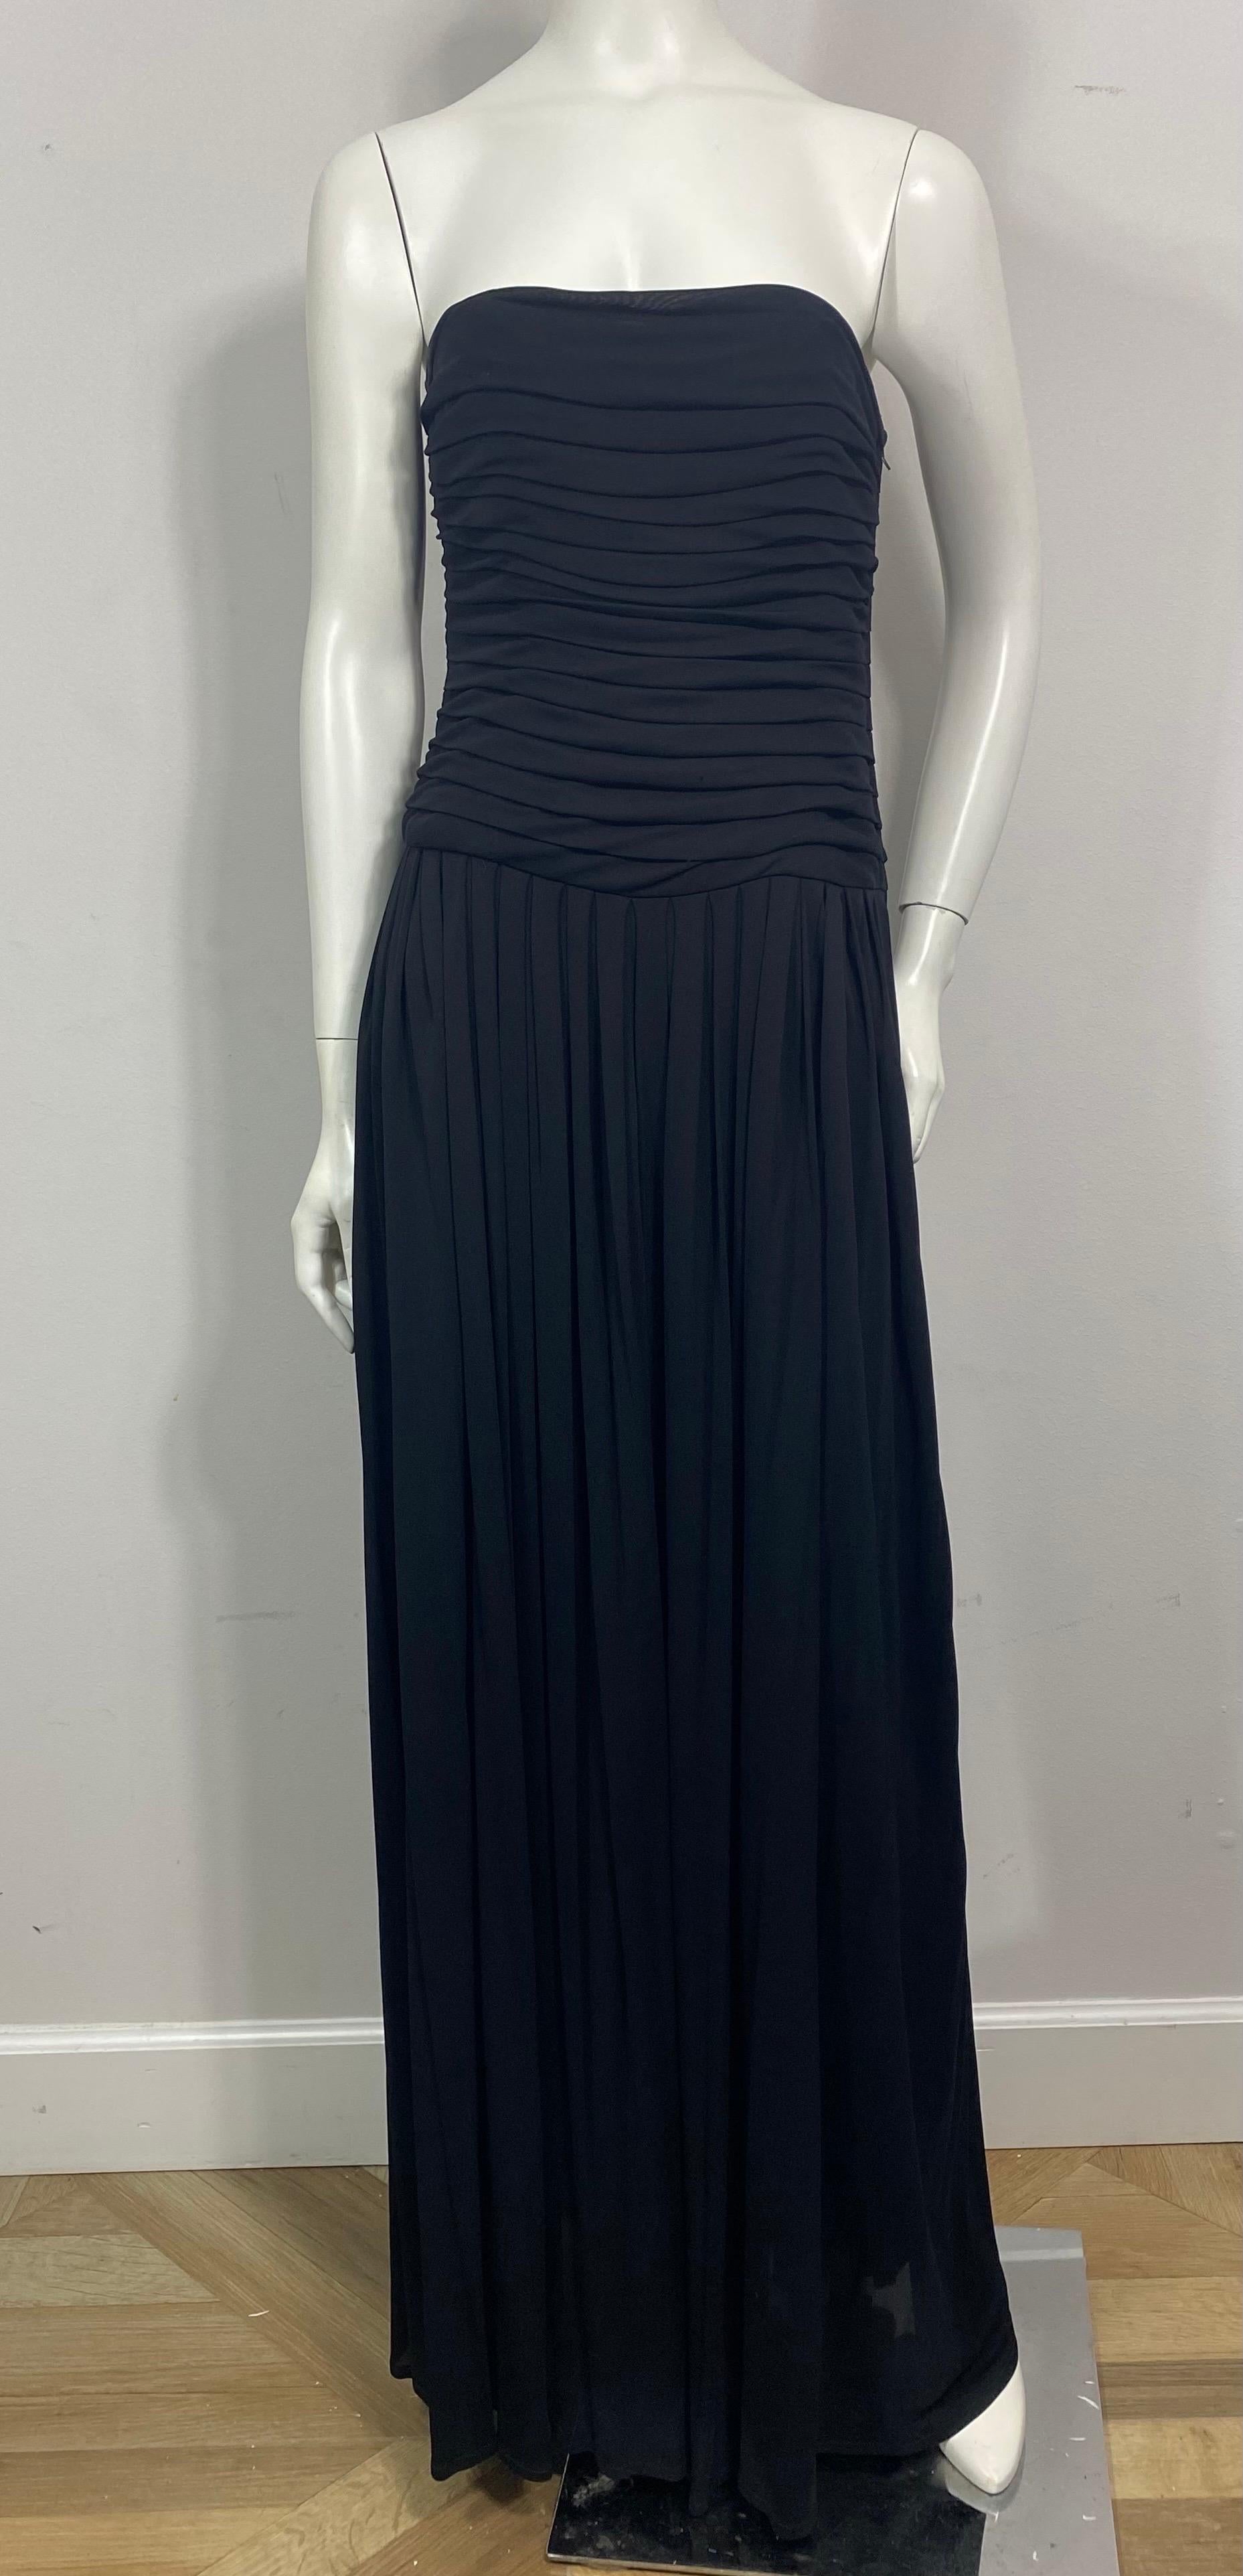 Lanvin 1970's Black Shutter Pleat Matte Jersey Strapless Long Dress-Size 40. Cette création simple mais élégante de Lanvin date des années 1970 et est en bon état vintage. La robe longue est réalisée en jersey noir mat, le corsage doublé sans